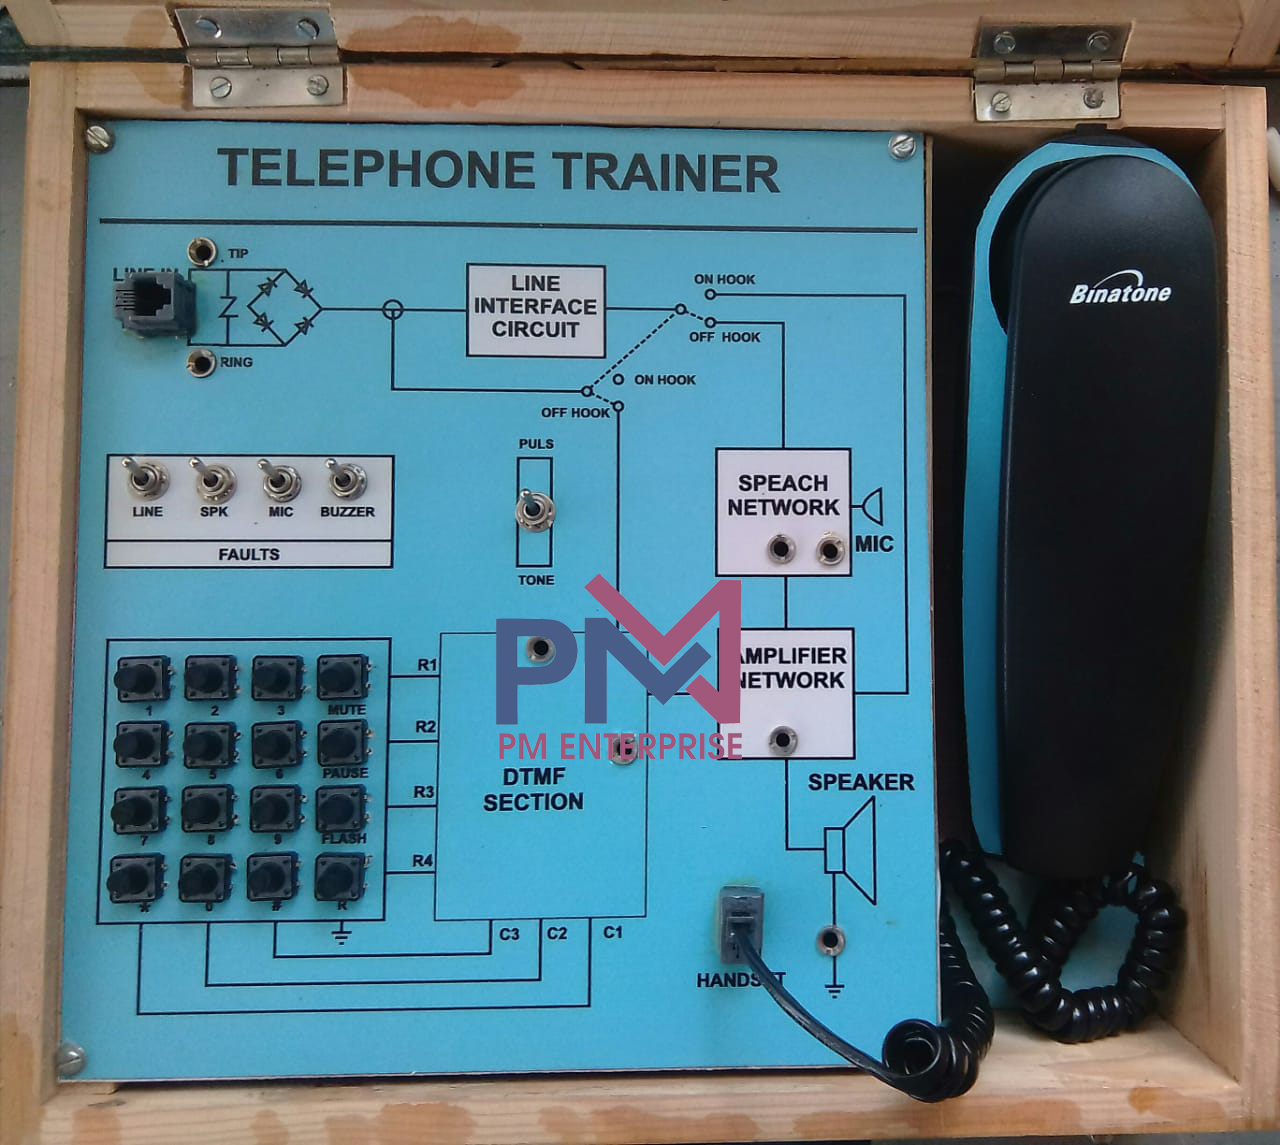 PM-P3246 TELEPHONE TRAINER